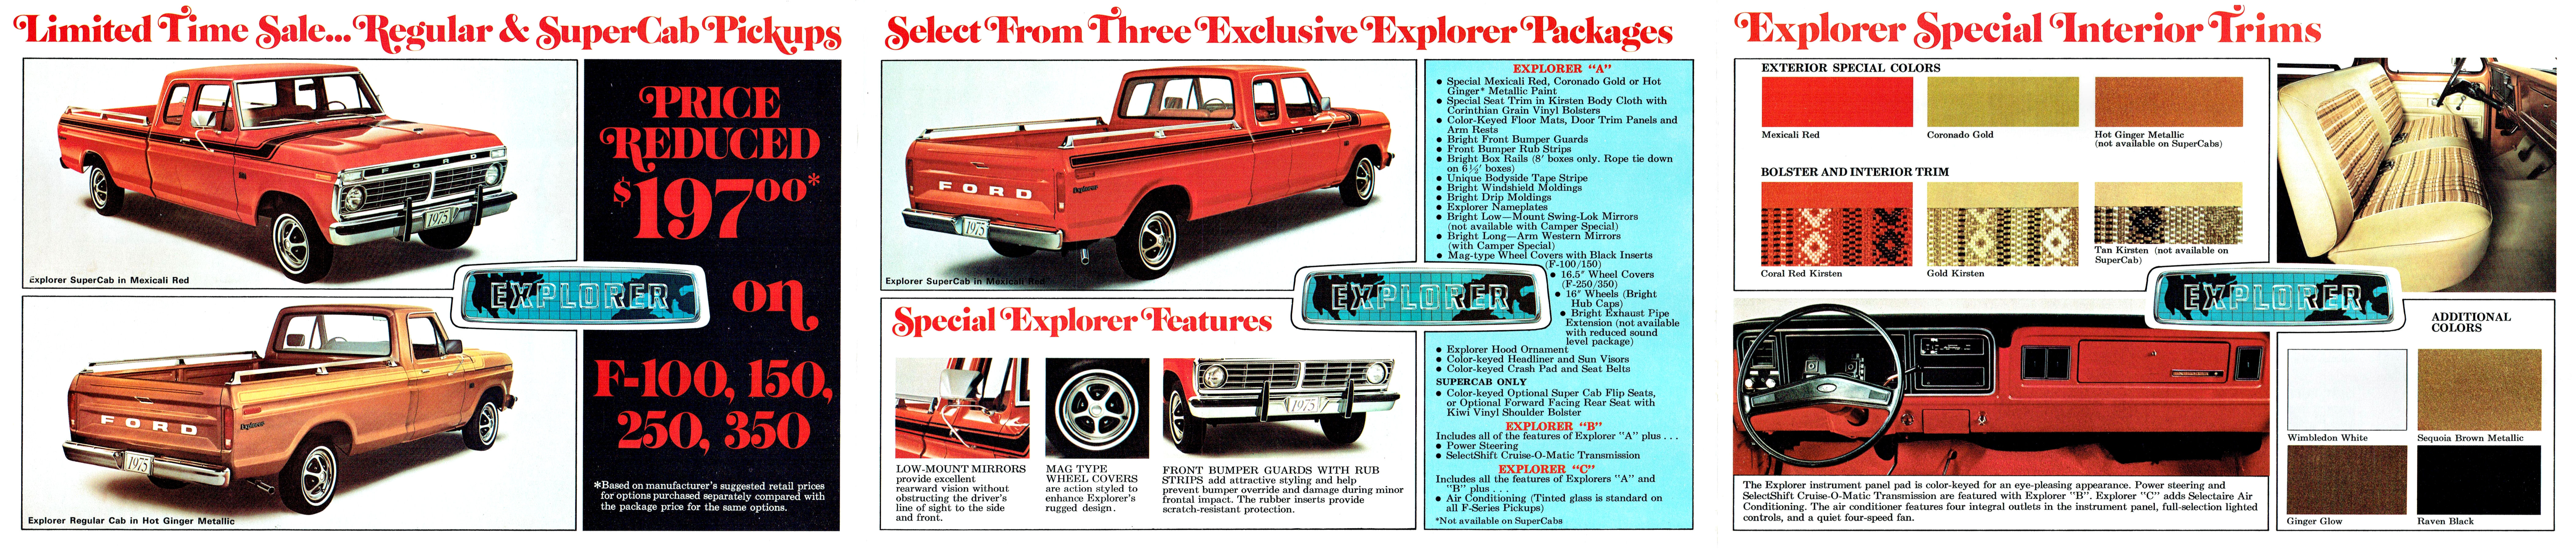 1975 Ford Explorer Pickup Mailer-Side B